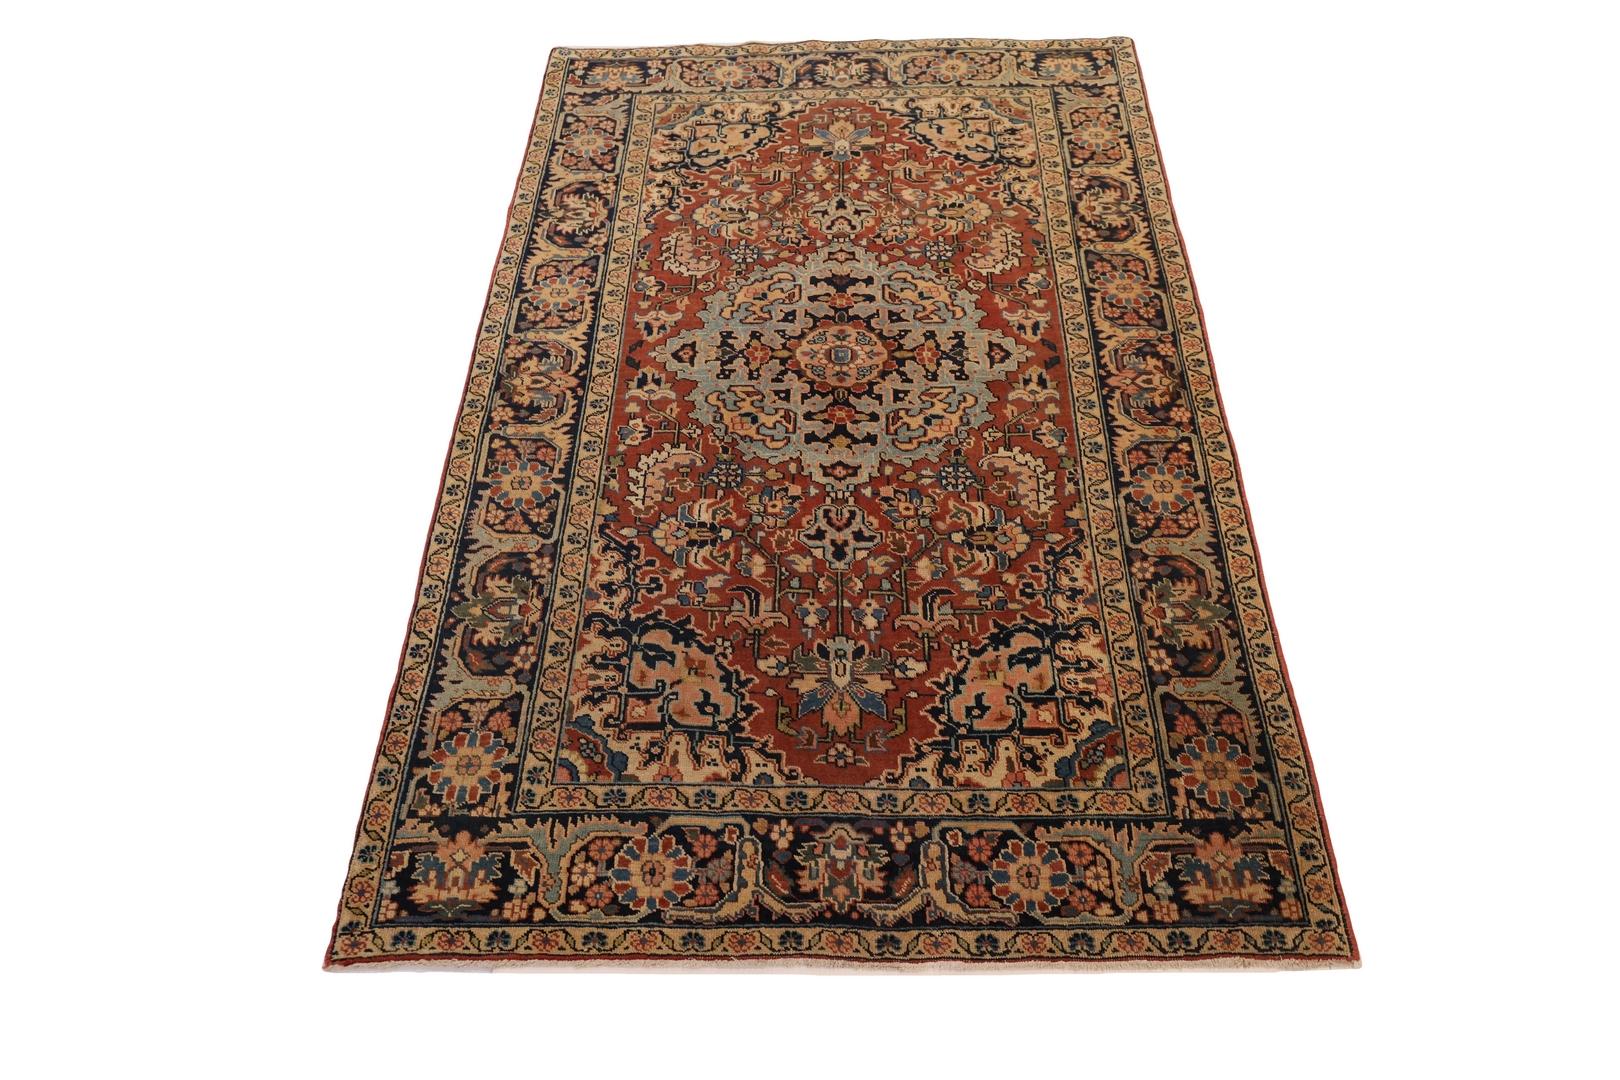 Der Heriz-Teppich ist ein atemberaubendes Beispiel für die traditionelle persische Weberei und zeichnet sich durch sein kühnes und auffälliges Design aus. Das Herzstück des Teppichs ist ein wunderschönes hellblaues Medaillon, das mit verschlungenen